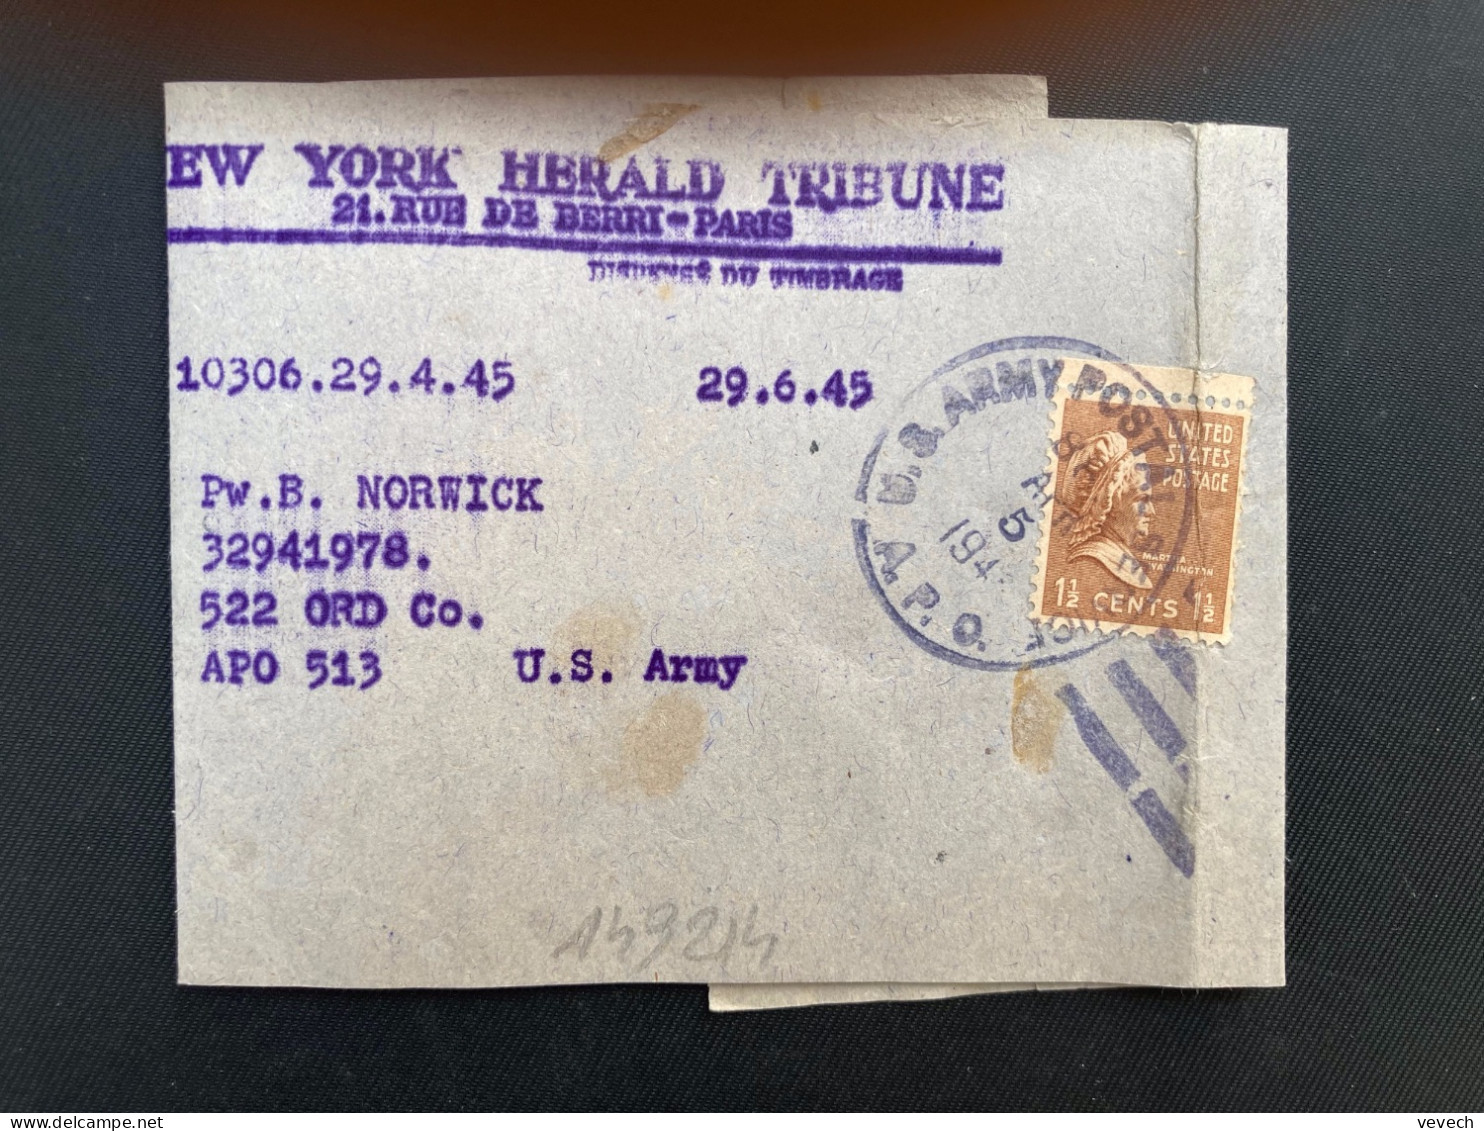 BJ NEW YORK HERALD TRIBUNE Pour APO 513 TP WASHINGTON 1 1/2c OBL.MEC.APR 5 1945 APO - Marcofilia